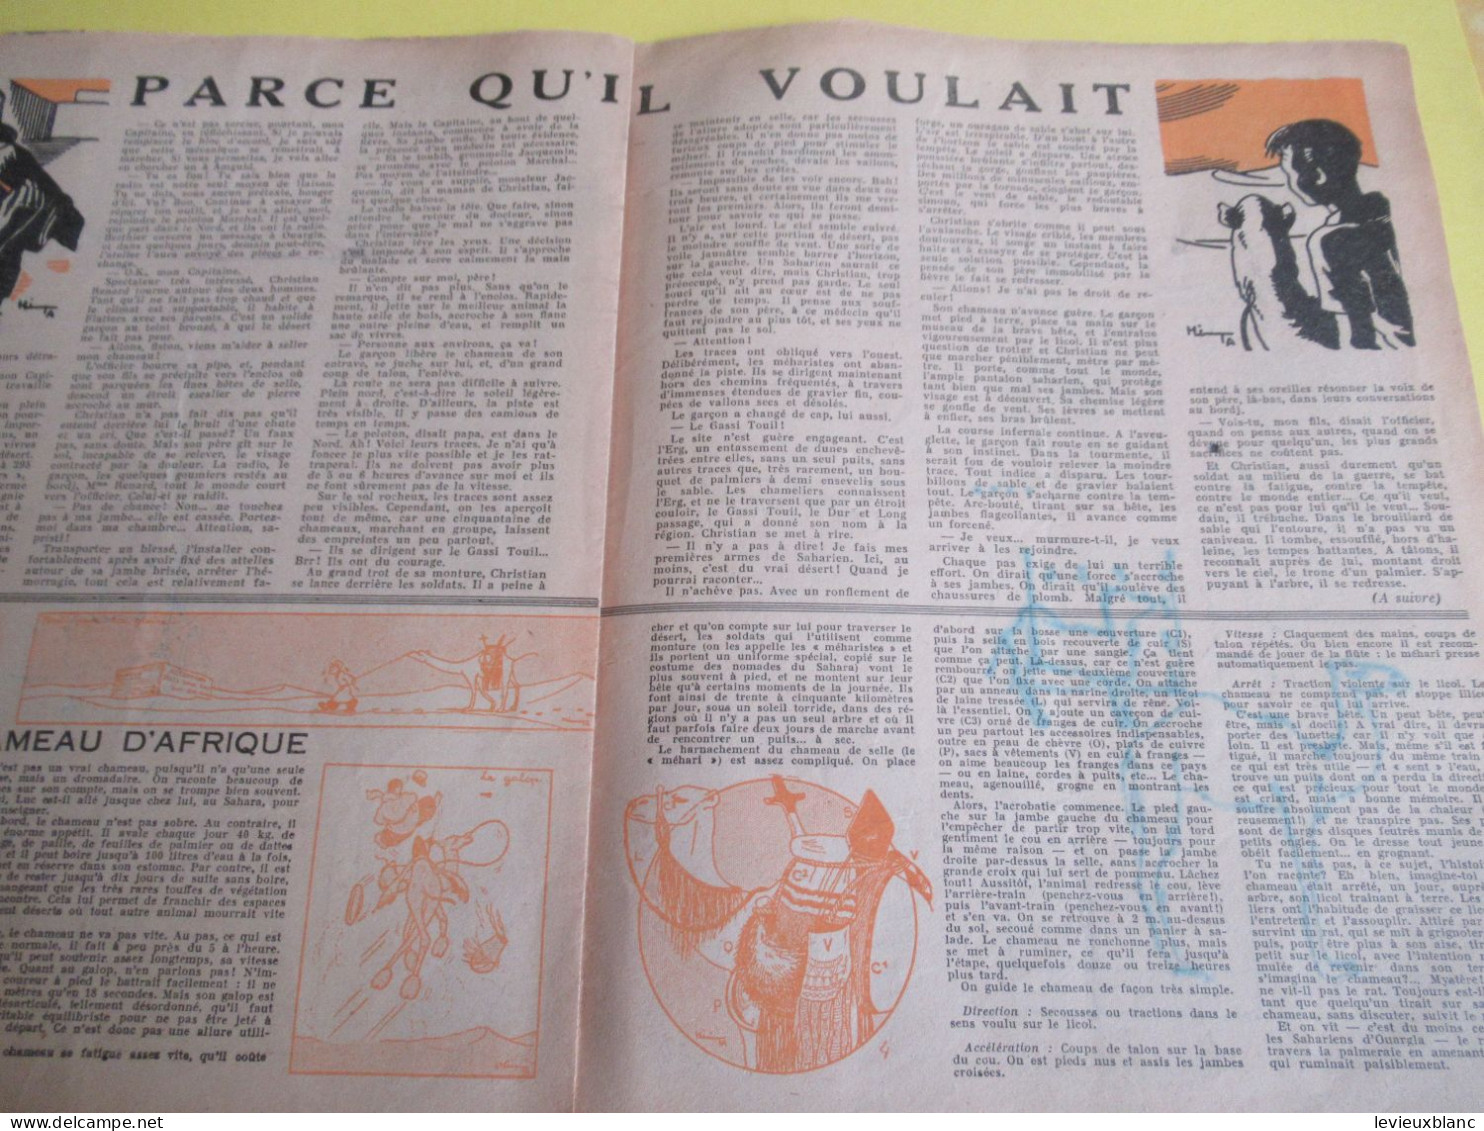 SCOUT De France/LOUVETEAU/Revue Bimensuelle/ N° 1- 2-3- 4- 5-7- 9-10- 11-12-13-14-19-20/1949-1950    VJ146 - Scoutisme